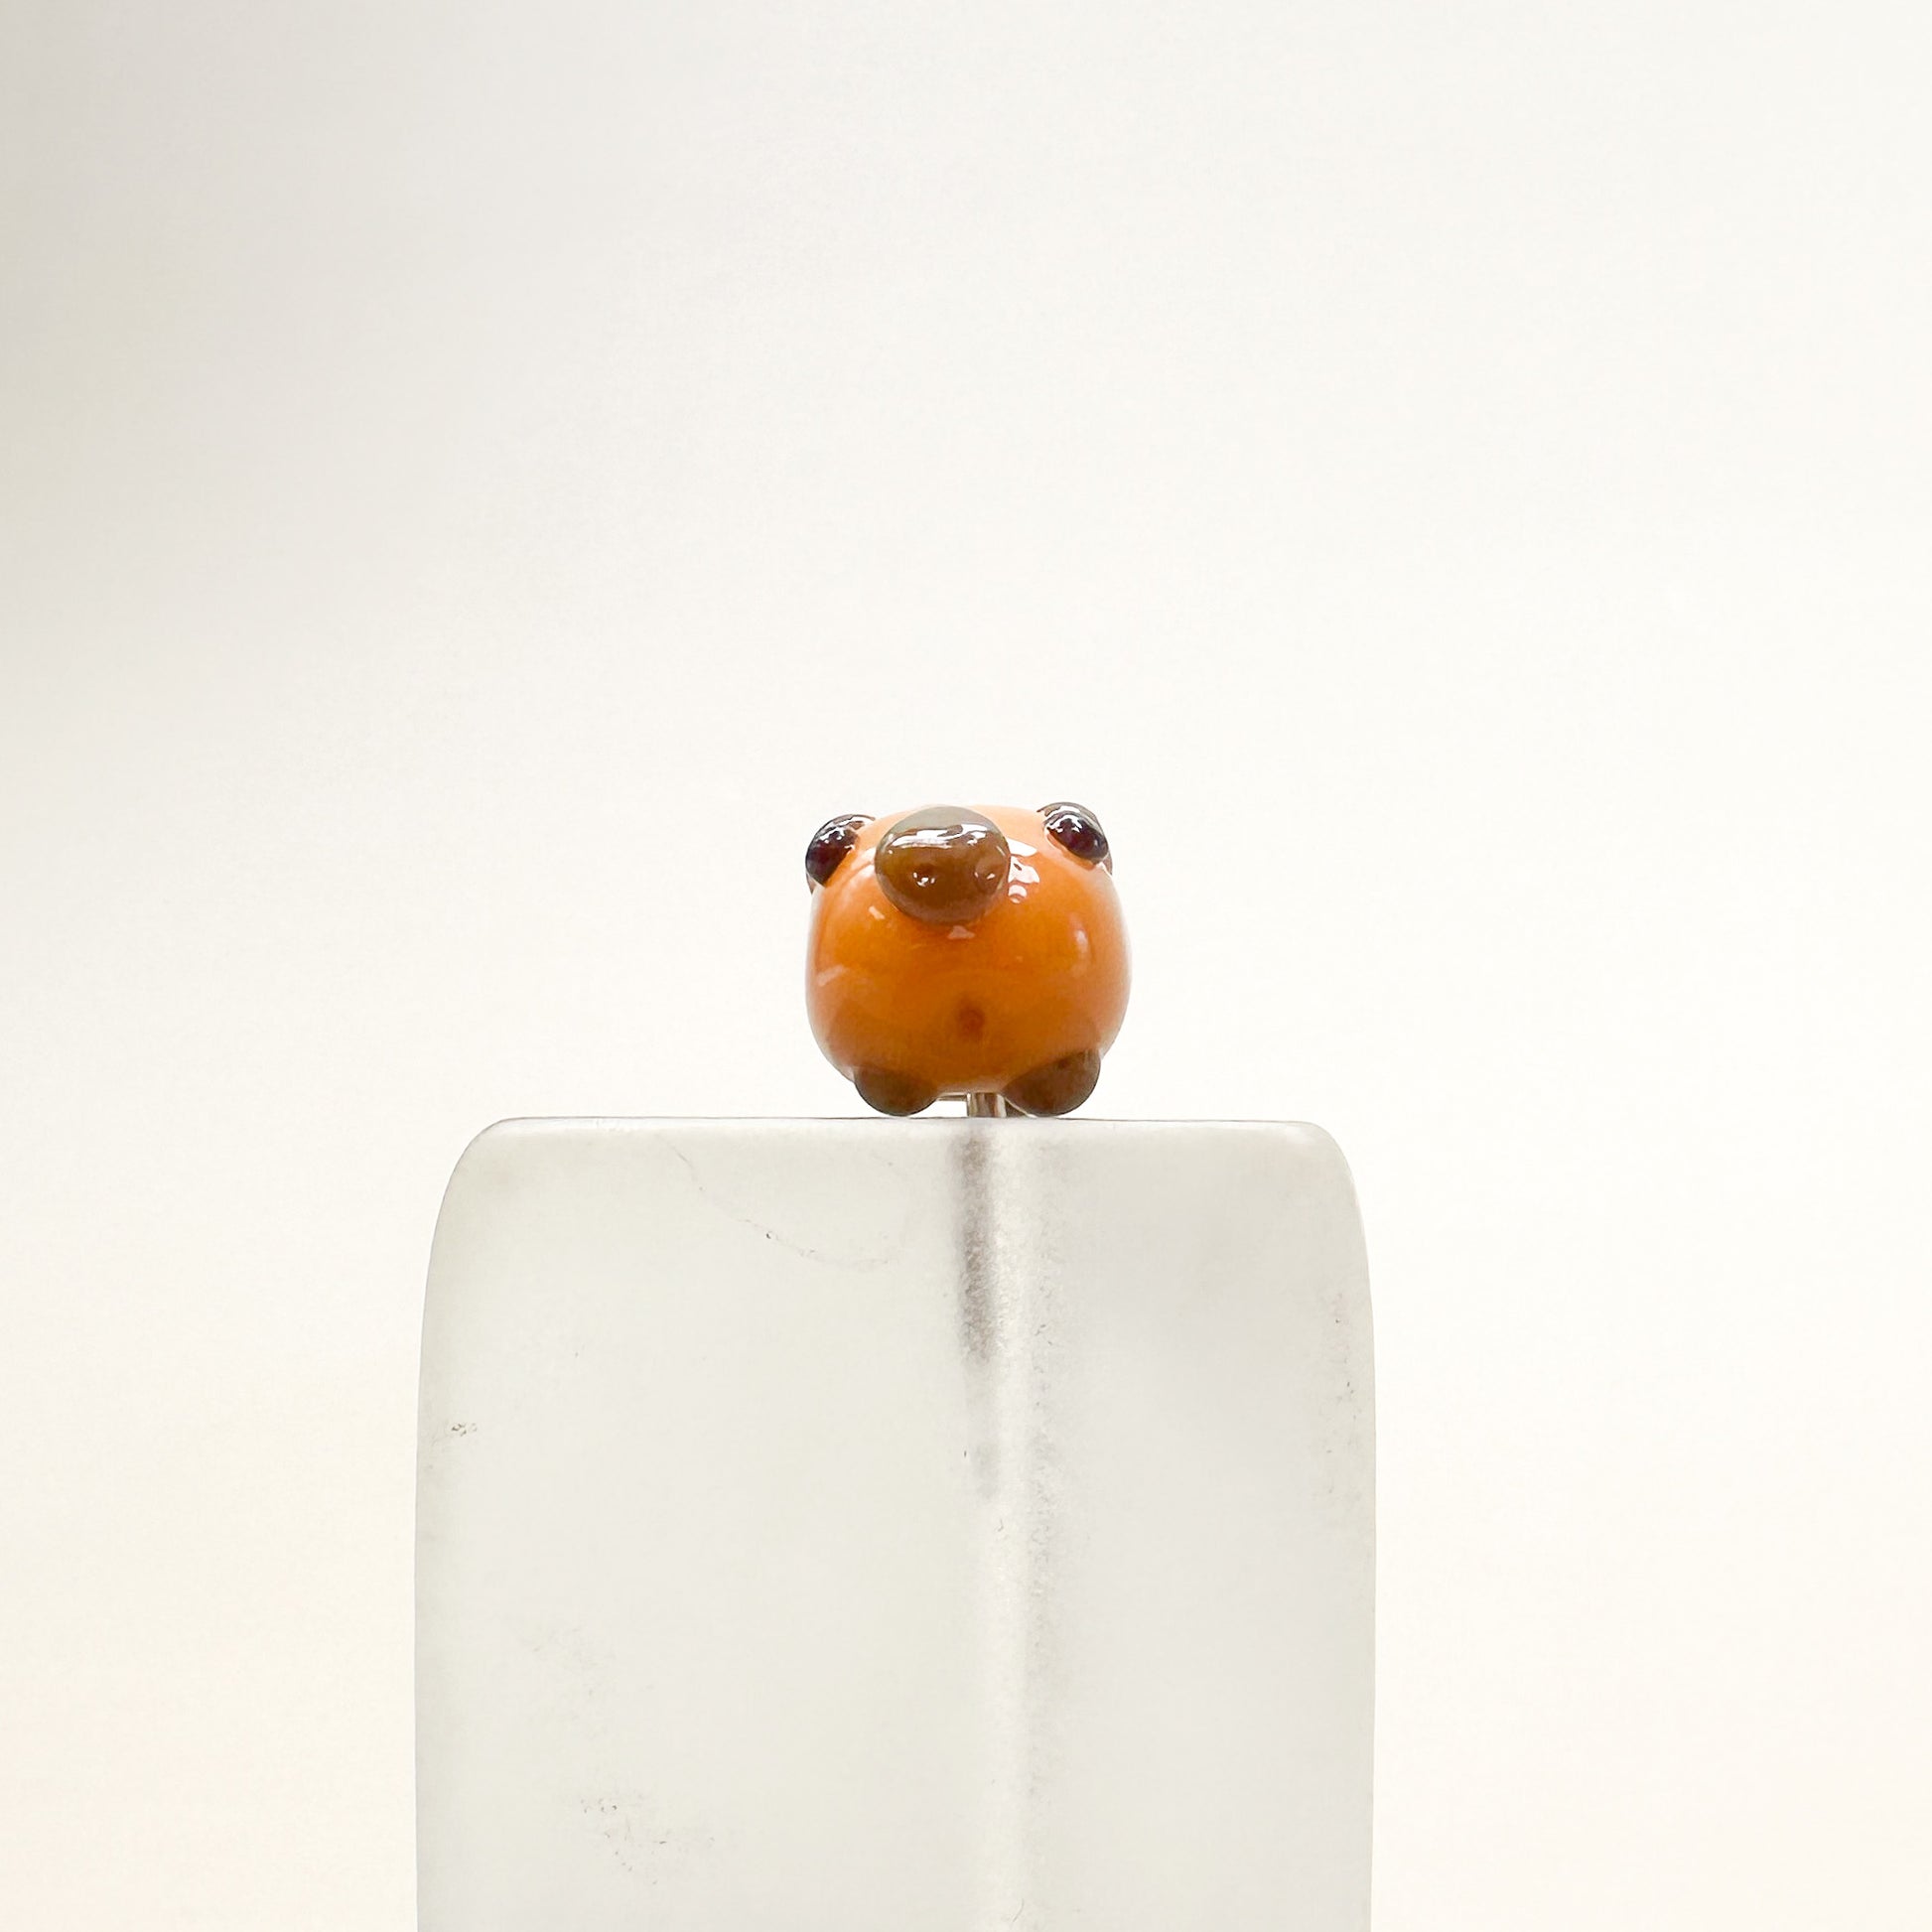 Chibi Handmade Glass Beads - Capybara-The Bead Gallery Honolulu